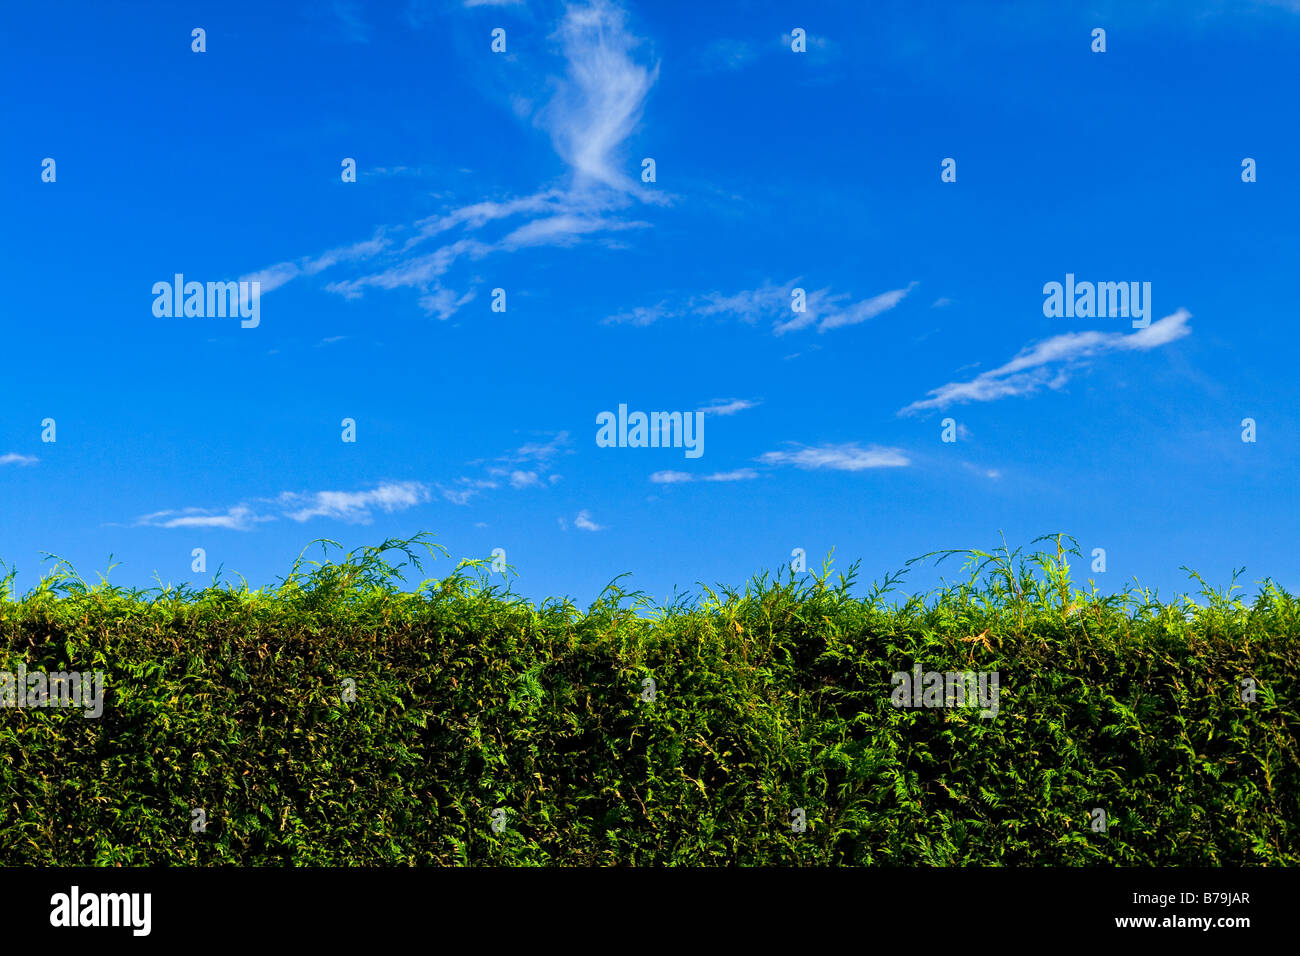 Leylandii hedge arbusto con nubes y cielo azul detrás Foto de stock